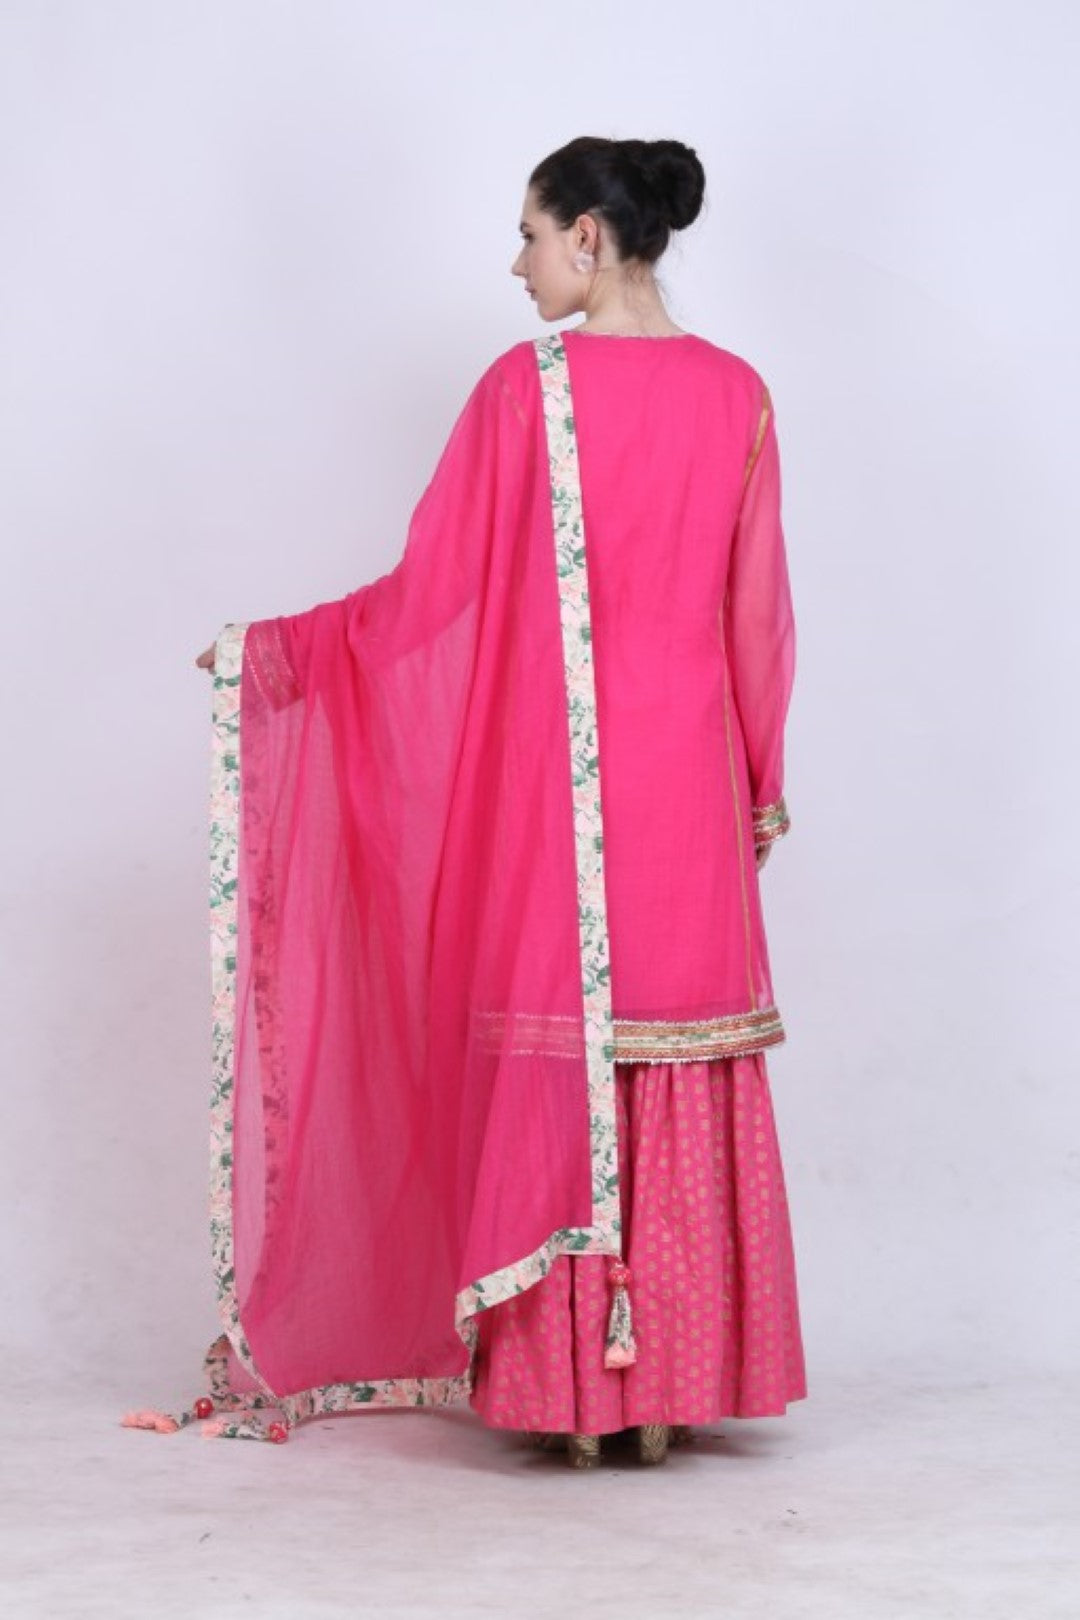 Hot pink kota doria kurta with cotton silk skirt and kota doria dupatta.